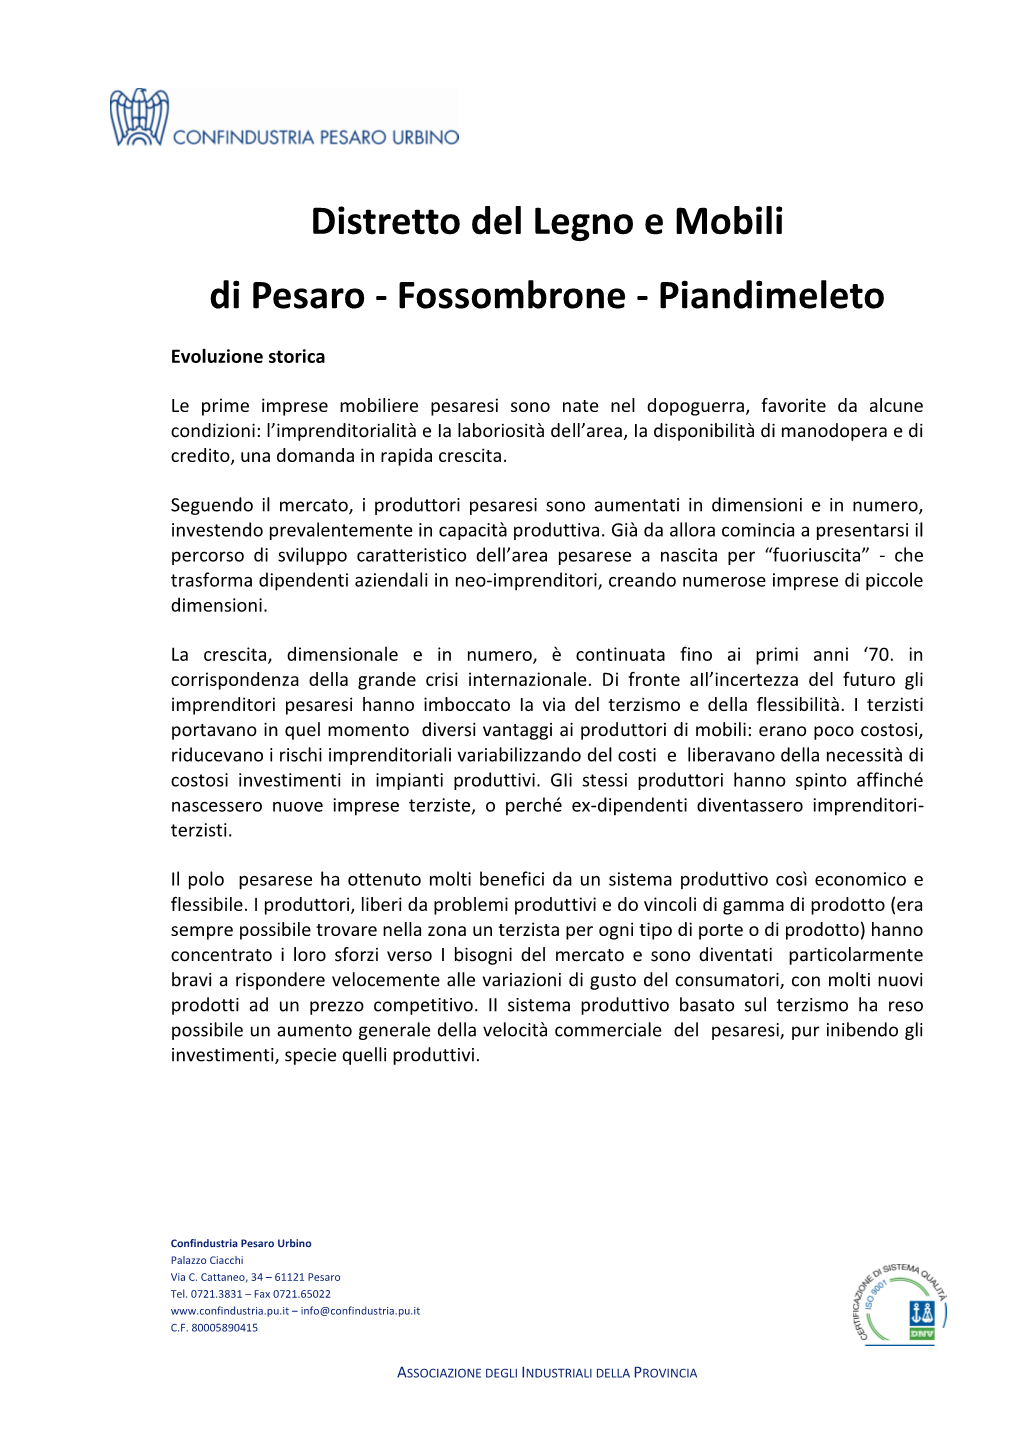 Distretto Del Legno E Mobili Di Pesaro - Fossombrone - Piandimeleto